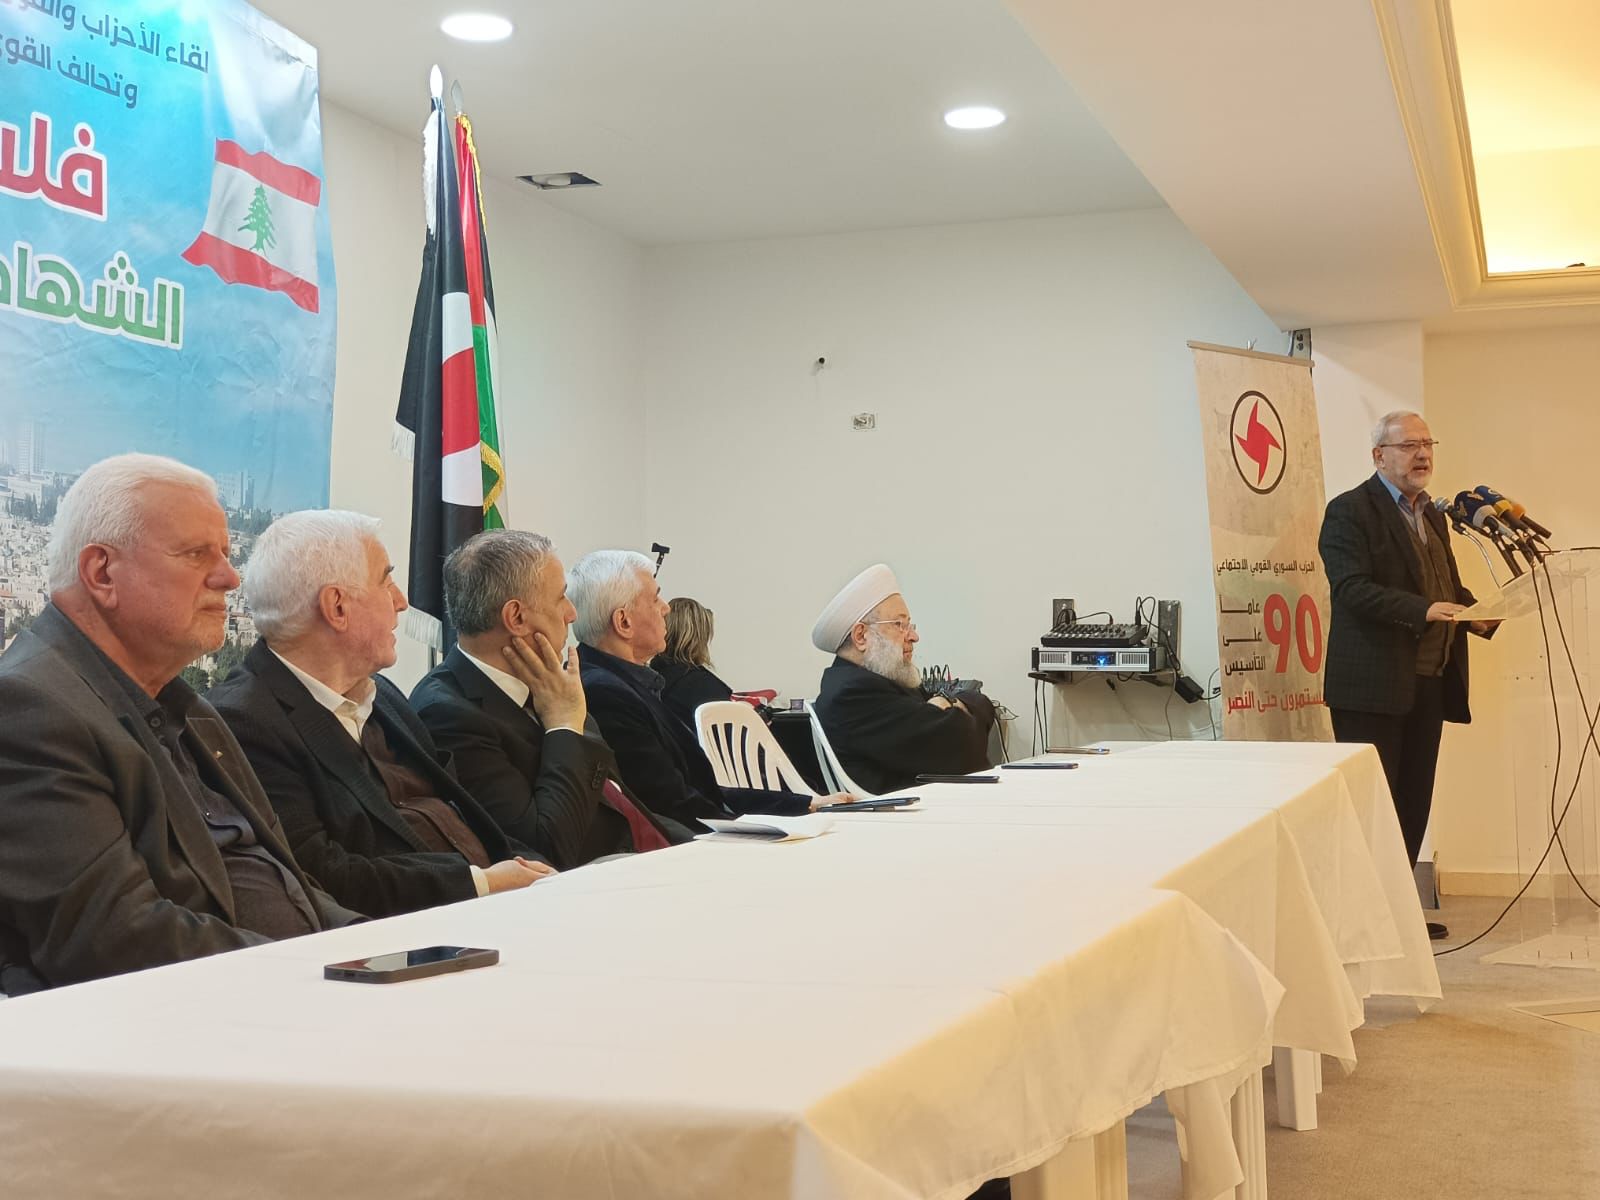 "فلسطين الشهادة والانتصار": لقاءٌ تضامنيٌ في بيروت وتأكيد على خيار المقاومة